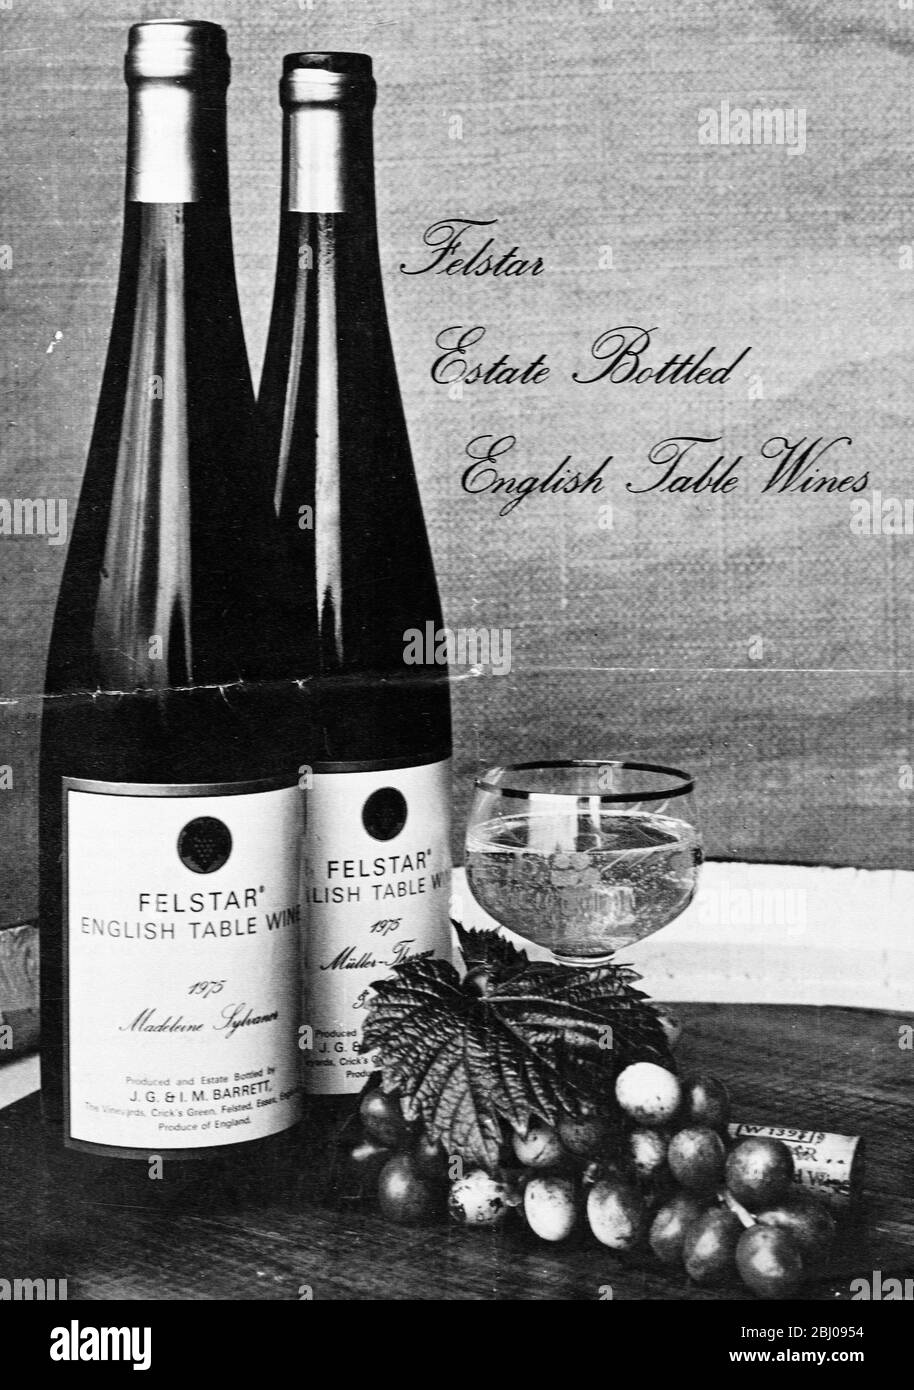 Felstar Estate Abgefülltes Englisches Tafelwein. Produziert von J.G. UND I.M. Barrett at Cricks Green, Felsted, Essex. Stockfoto